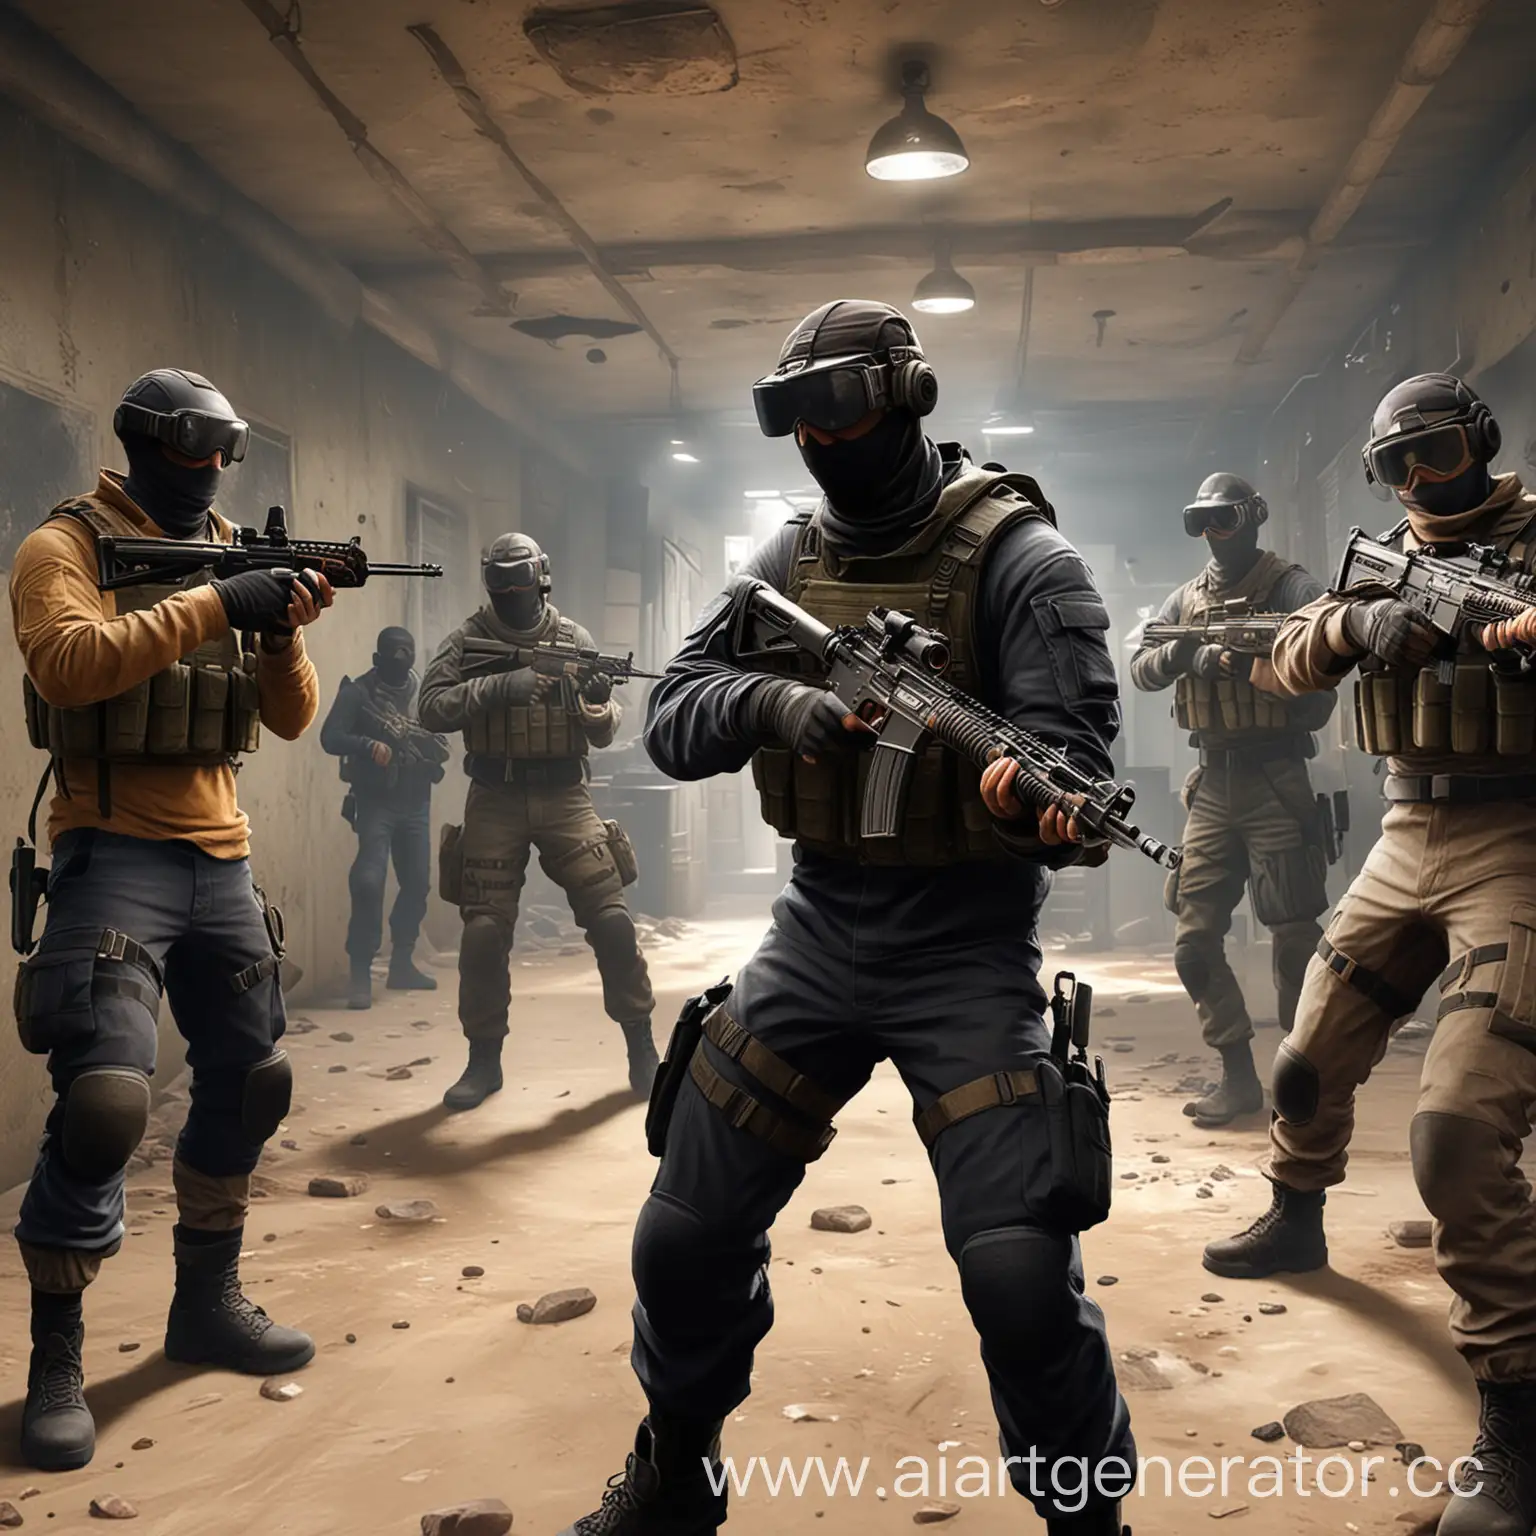 Сыграй с друзьями в Counter Strike на арене виртуальной реальности - 15 минут игры бесплатно
